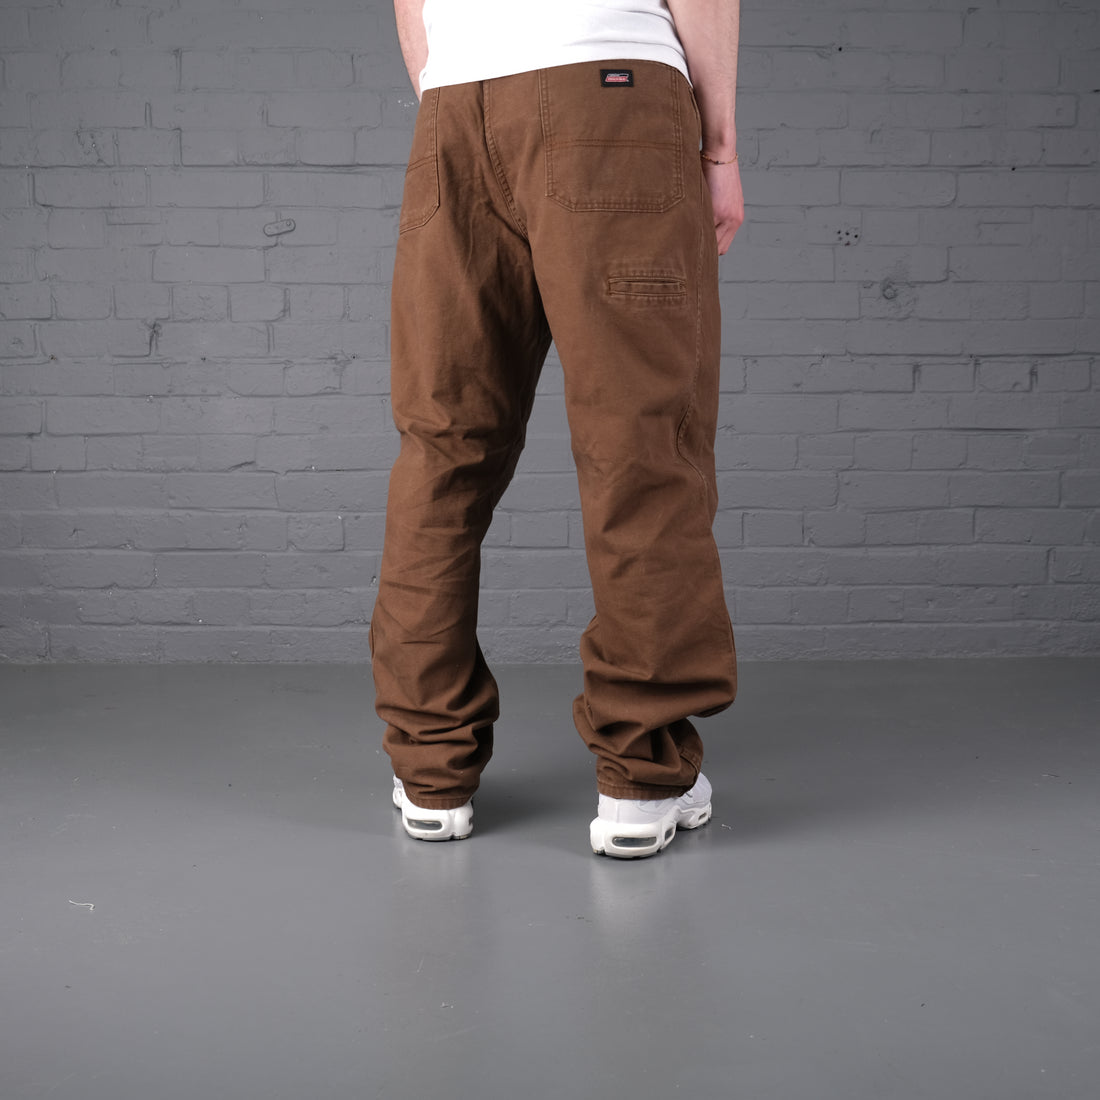 Vintage Dickies Jeans in brown.